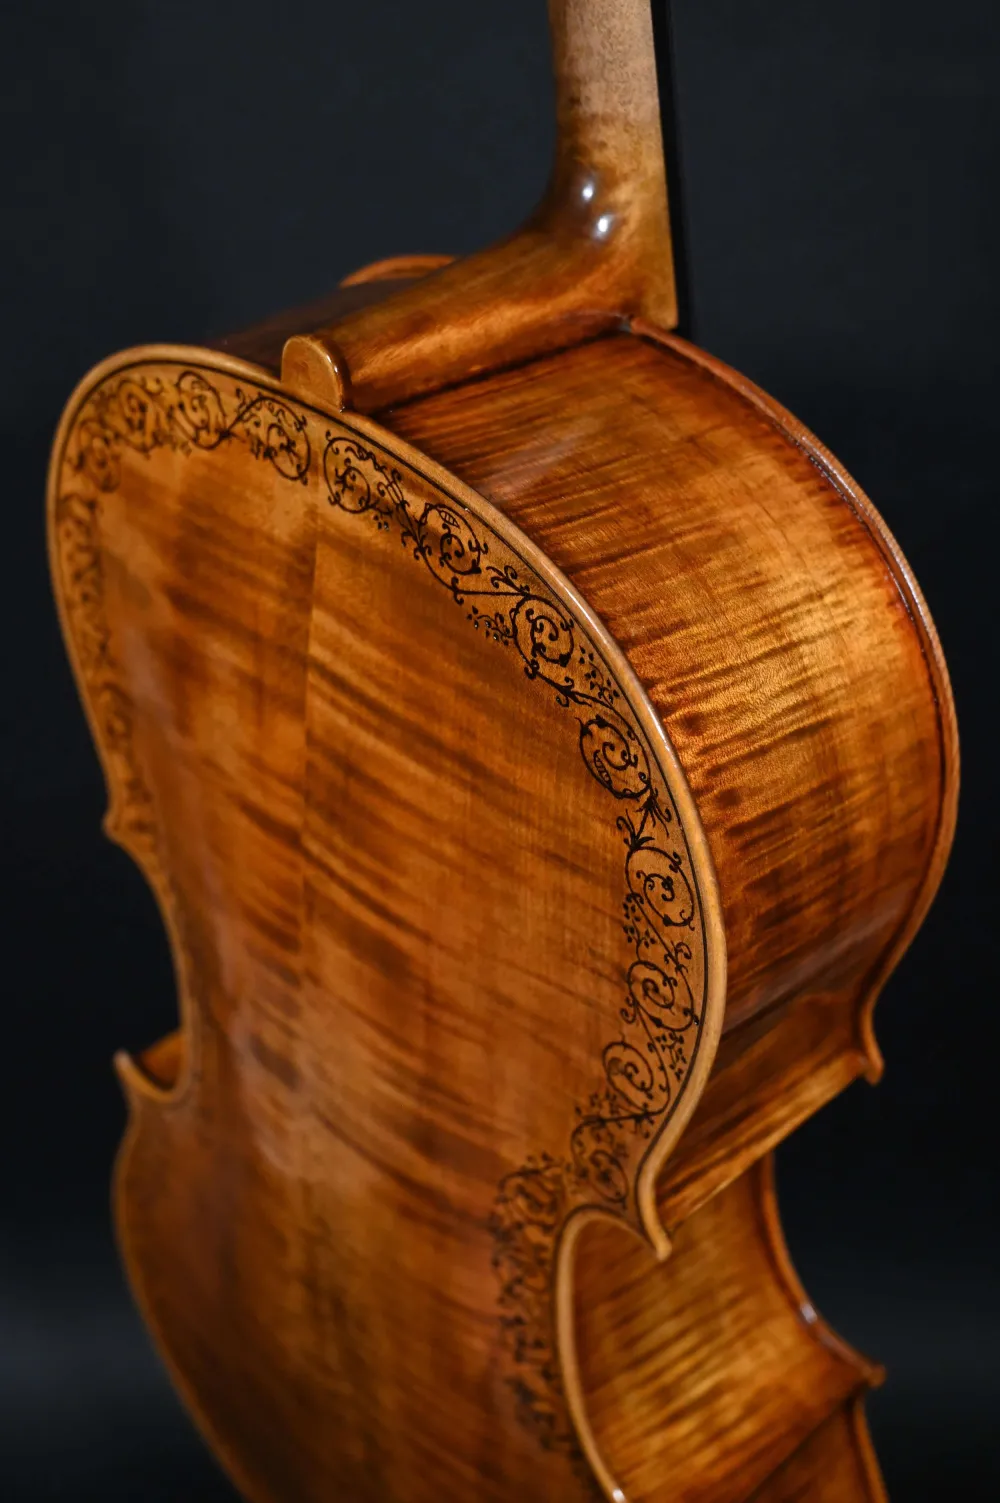 Halsansatzansicht eines Kalas Csaba 4/4 Meister Cello (Violoncello) nach Stradivarius Handarbeit 2022